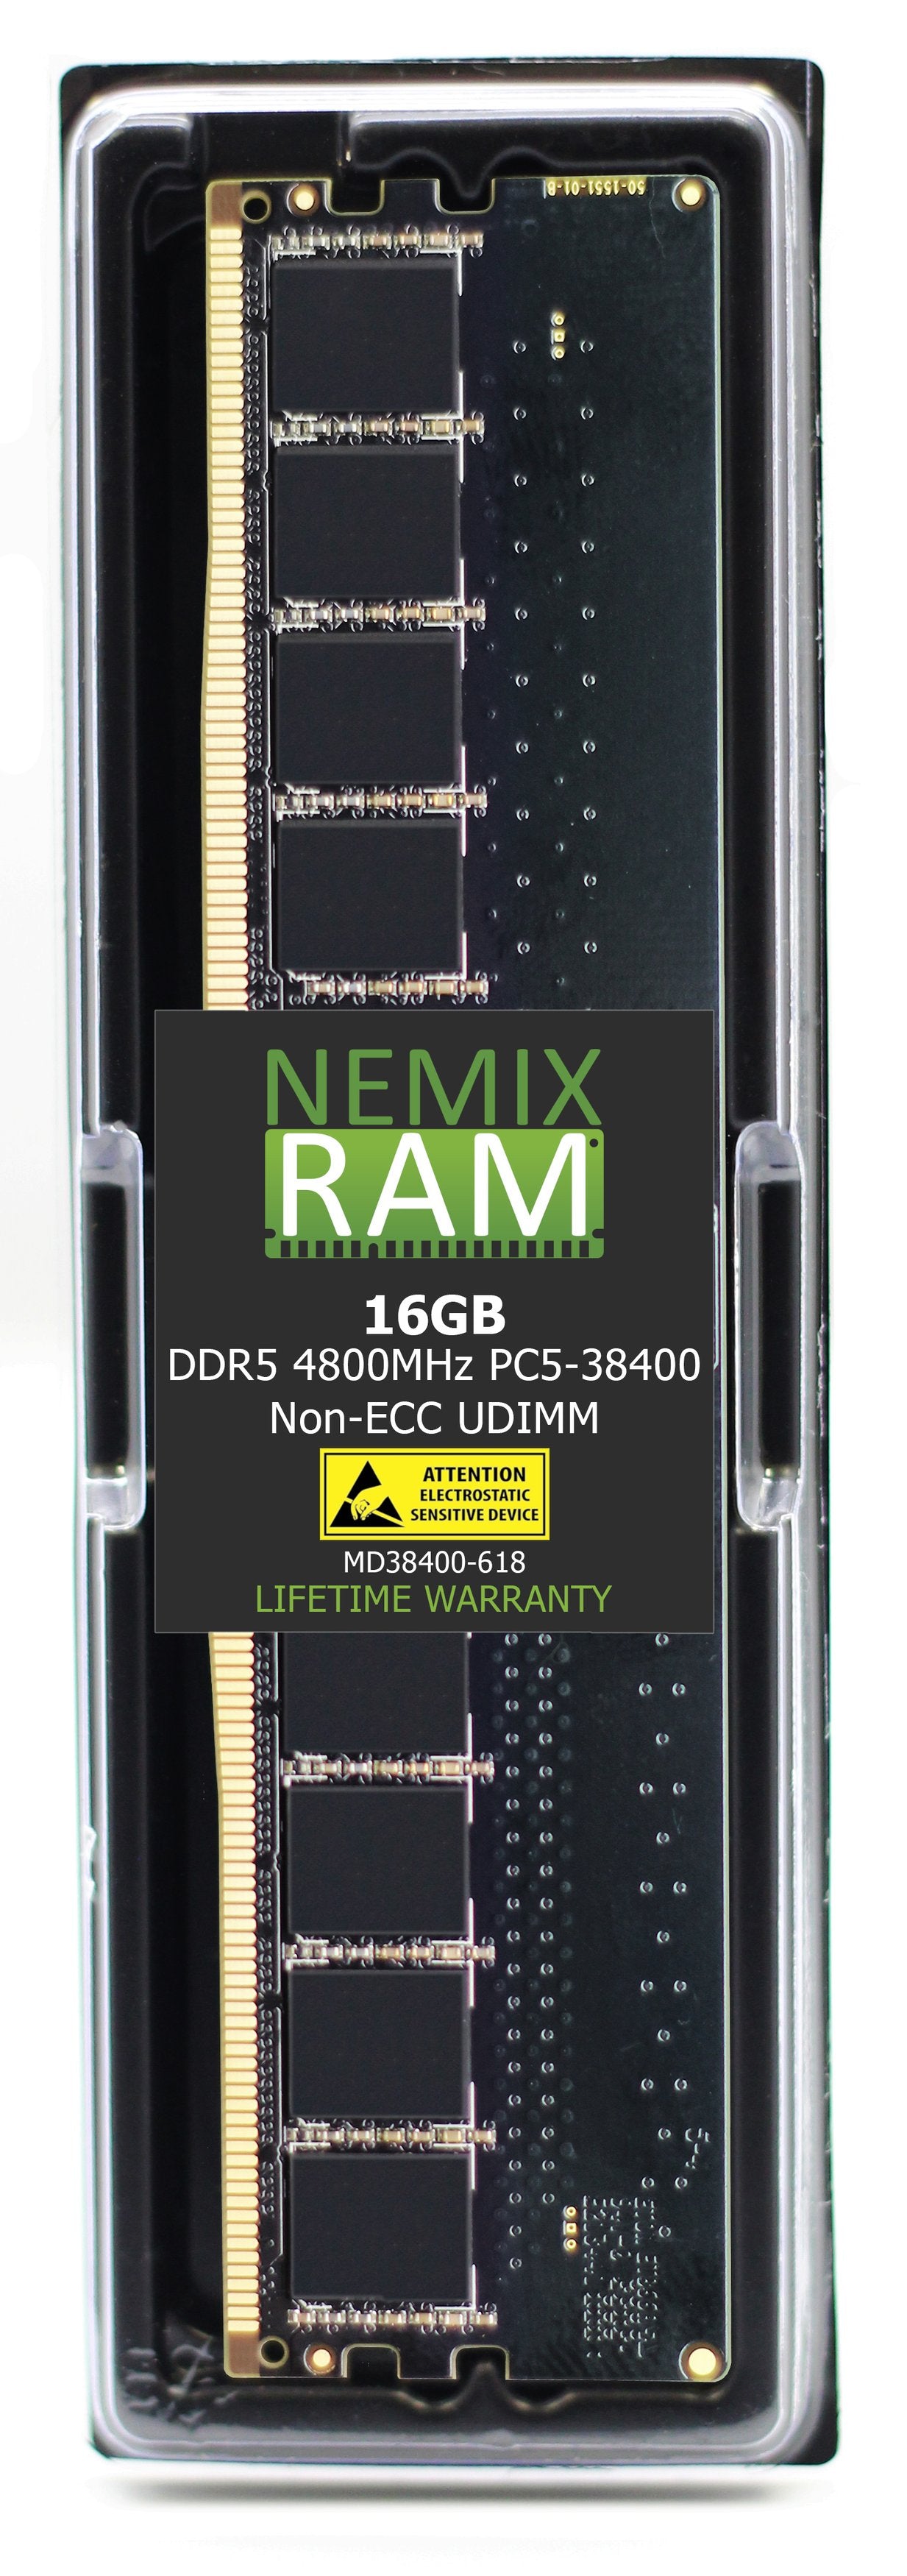 NEMIX RAM DDR5 4800MHZ PC5-38400 16GB 1Rx8 UDIMM Dell SNPK7G24C/16G AB883074 Memory Alienware Aurora R13 R15 Optiplex 7000 7010 XE4 Precision Workstation 3660 3660XE XPS 8950 Compatible